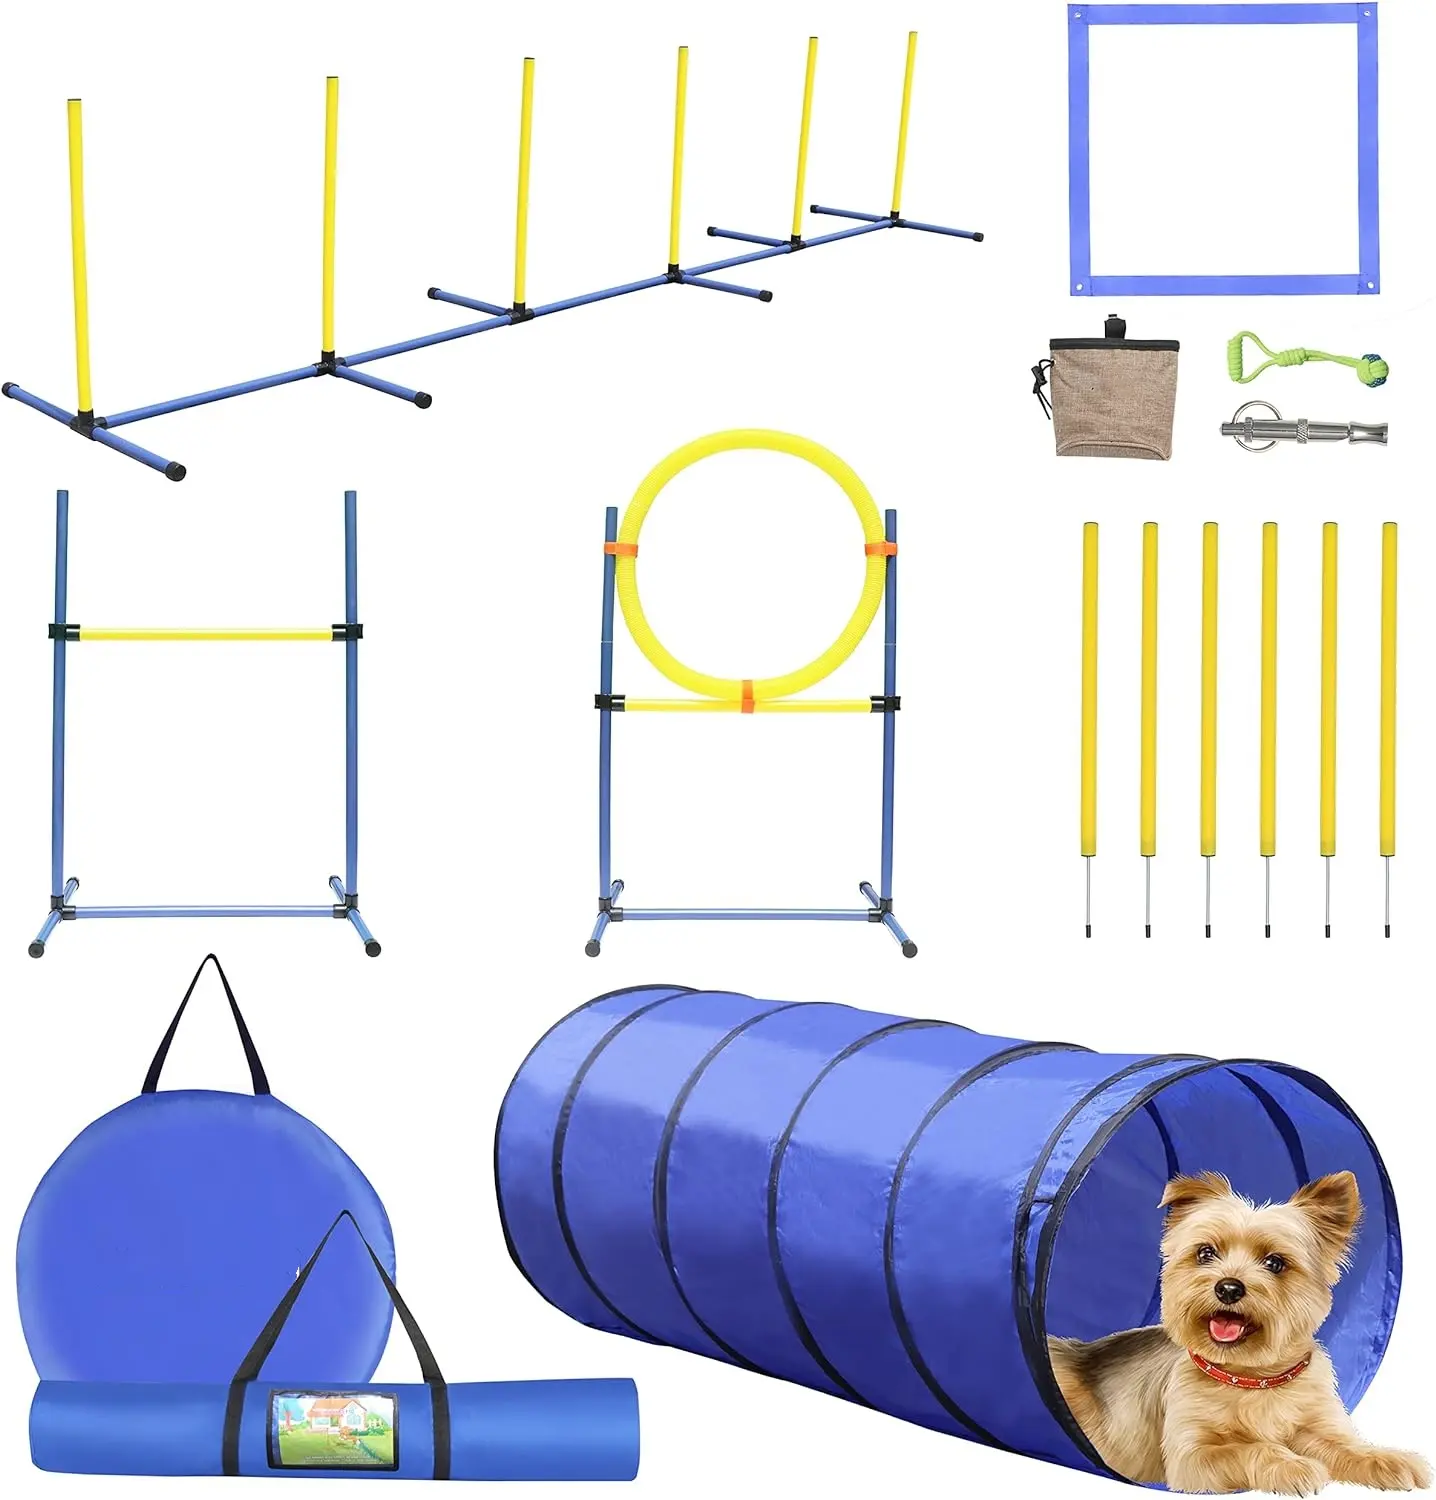 犬の敏捷性トレーニング機器セット屋外および屋内デラックス障害物コーススターターキット (トンネル付き)